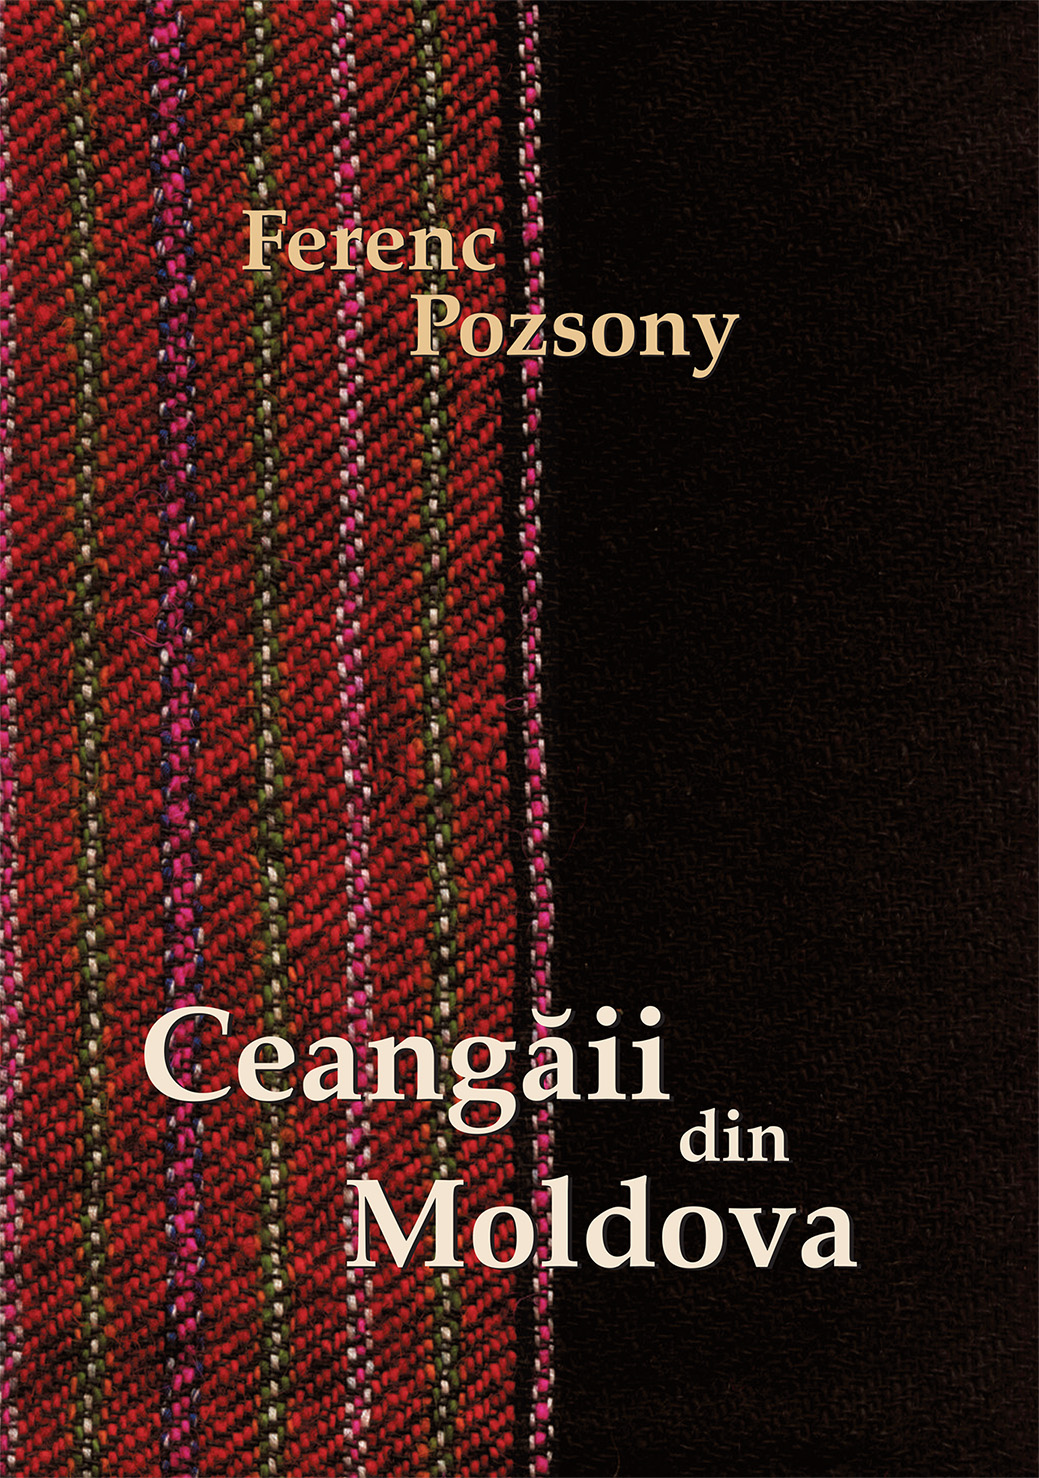 [The Moldavian Csángós] Ceangăii din Moldova